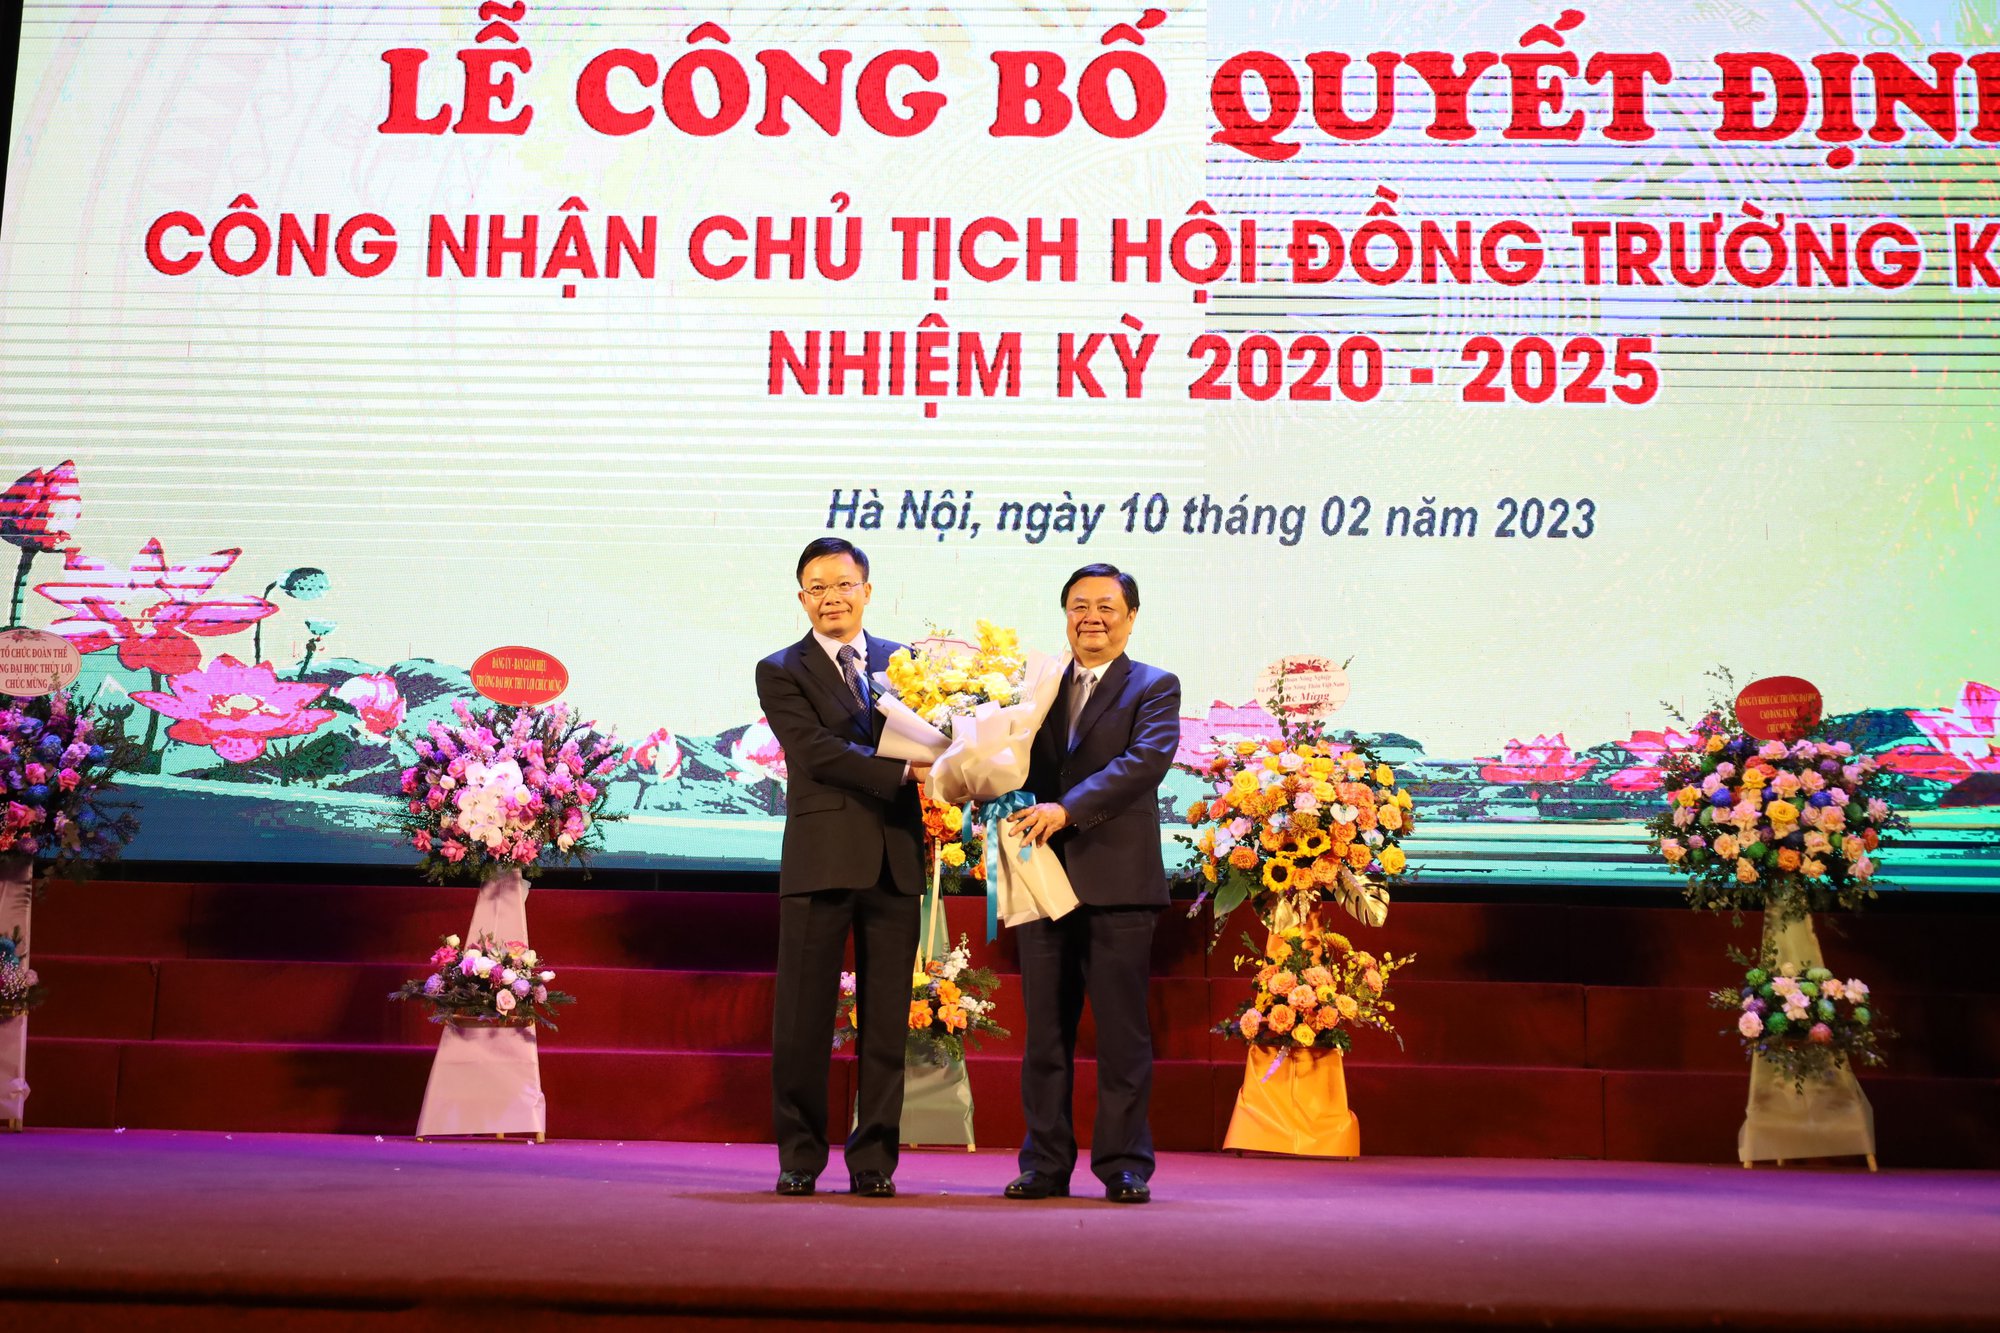 PGS Nguyễn Hữu Huế được bổ nhiệm làm Chủ tịch Hội đồng Trường Đại học Thủy lợi khoá IV, nhiệm kỳ 2020-2025 - Ảnh 4.